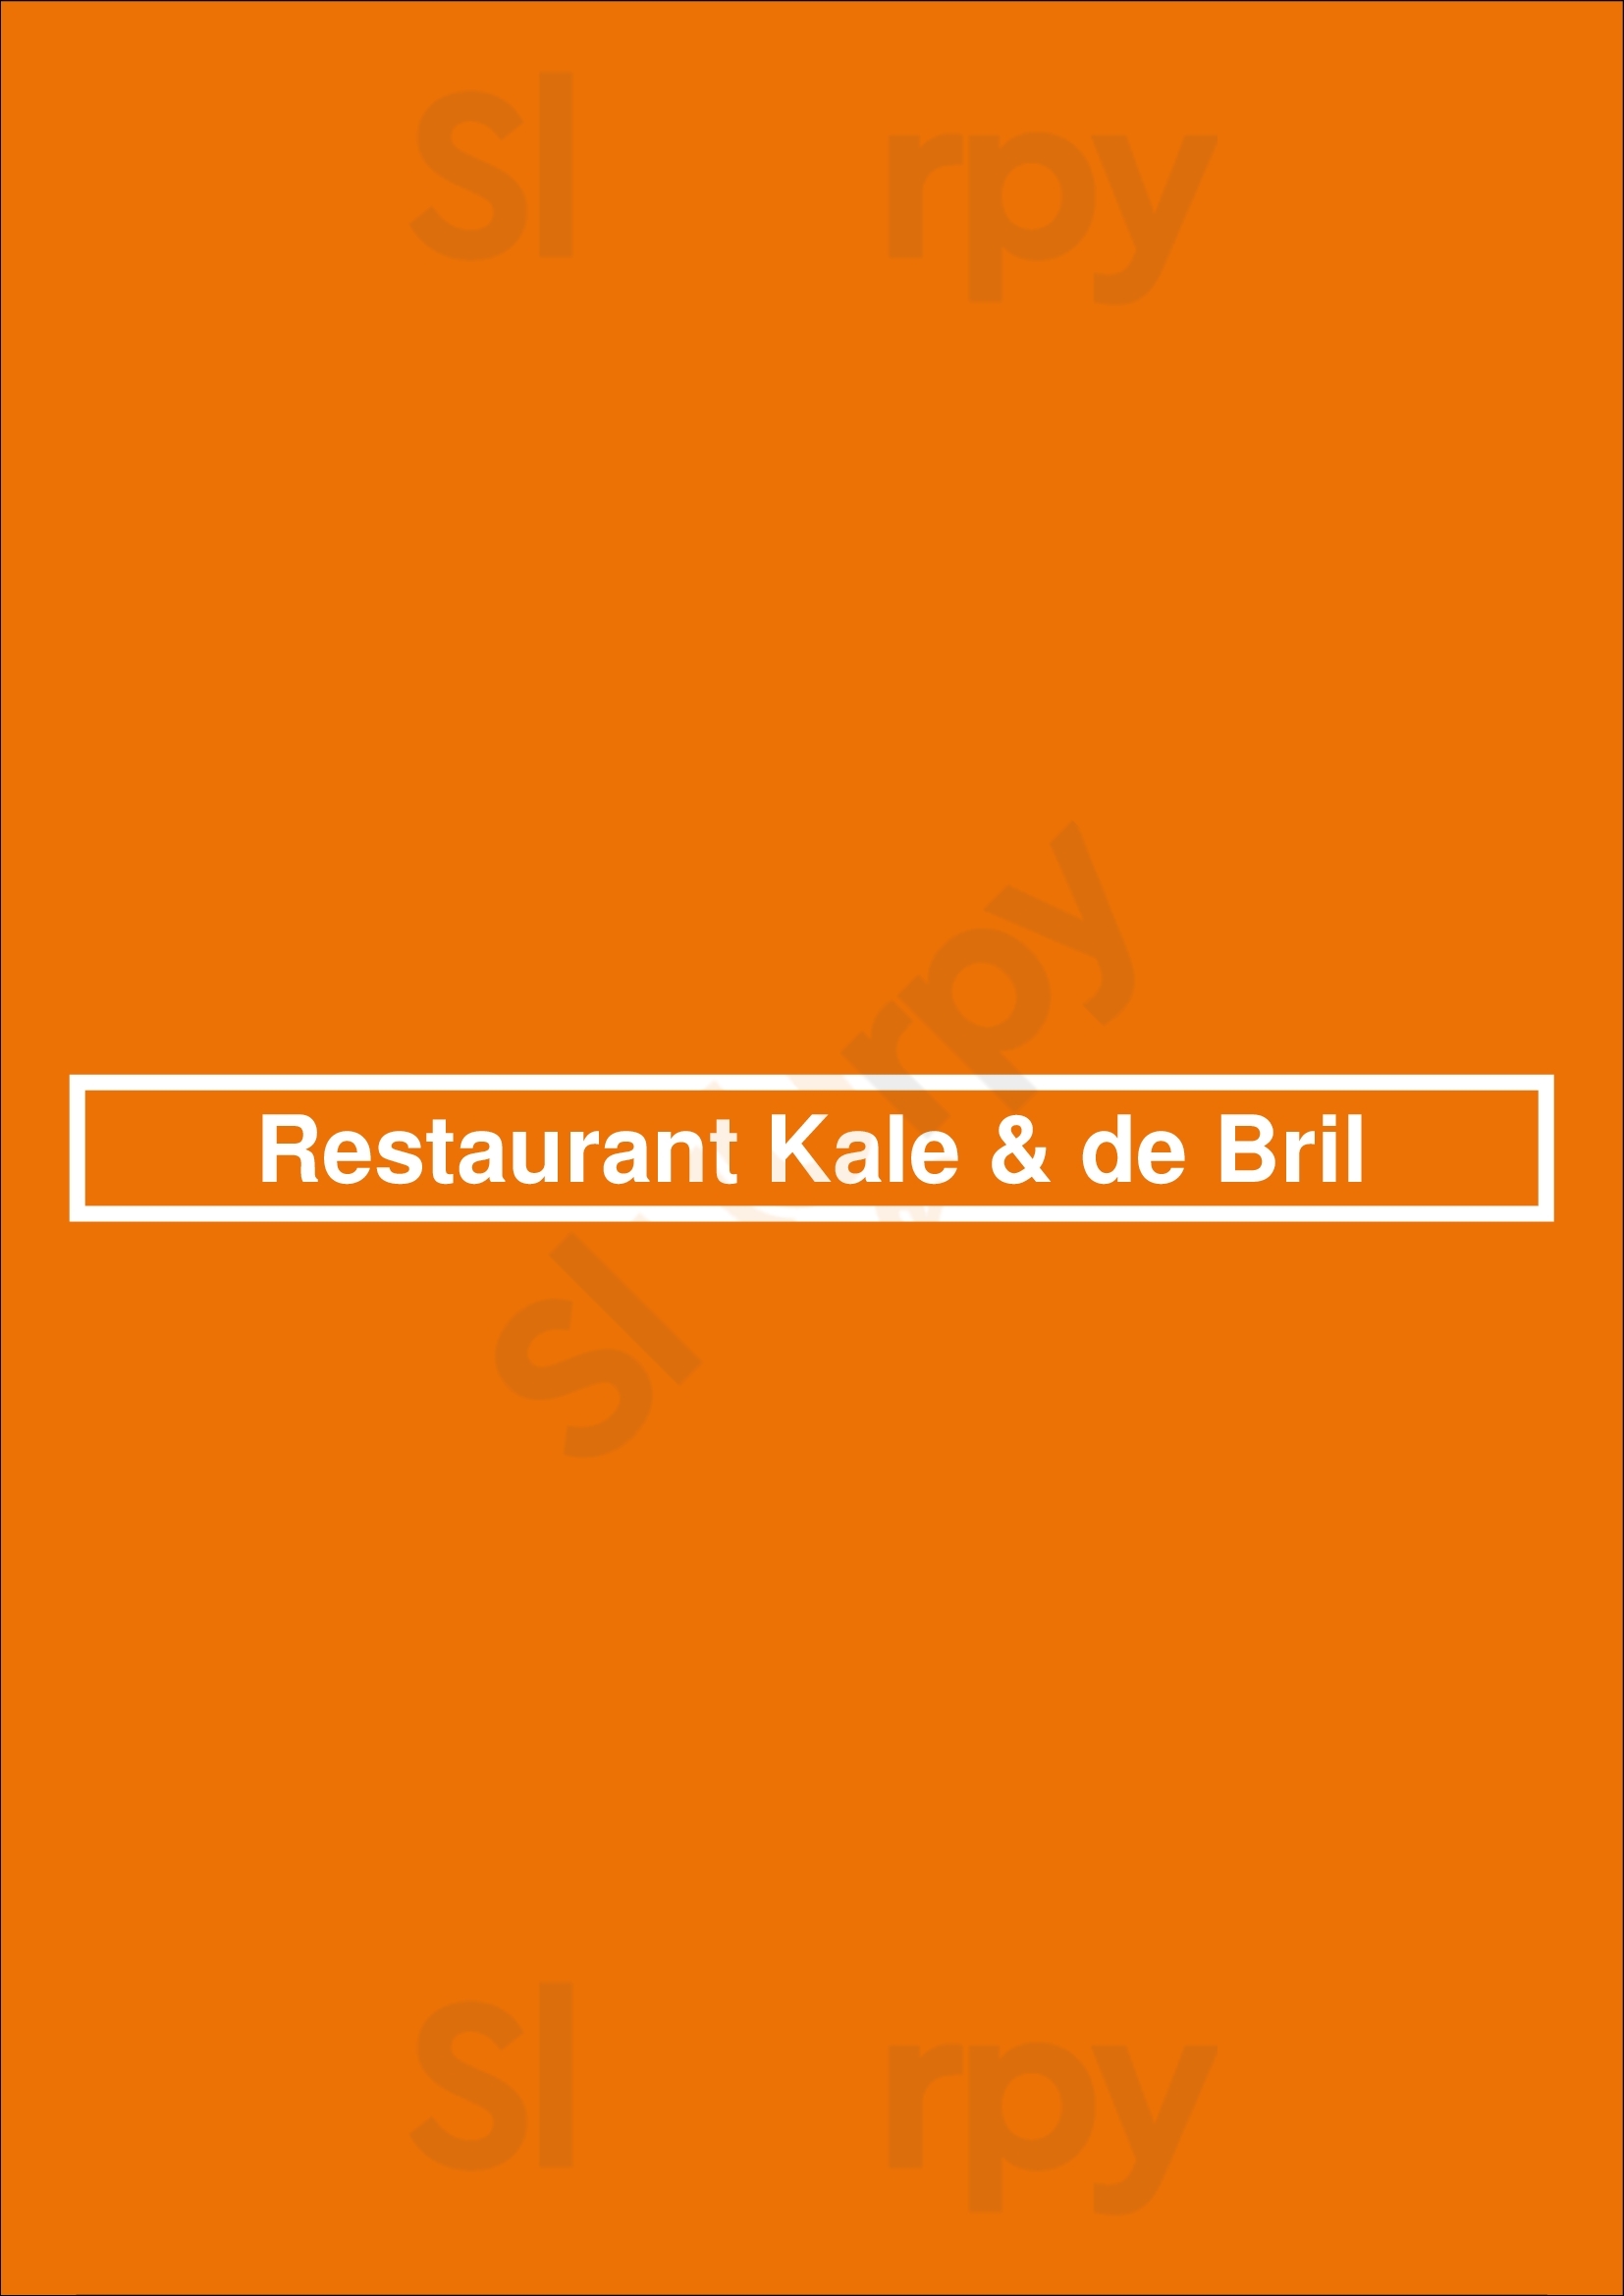 Restaurant Kale & De Bril Goes Menu - 1